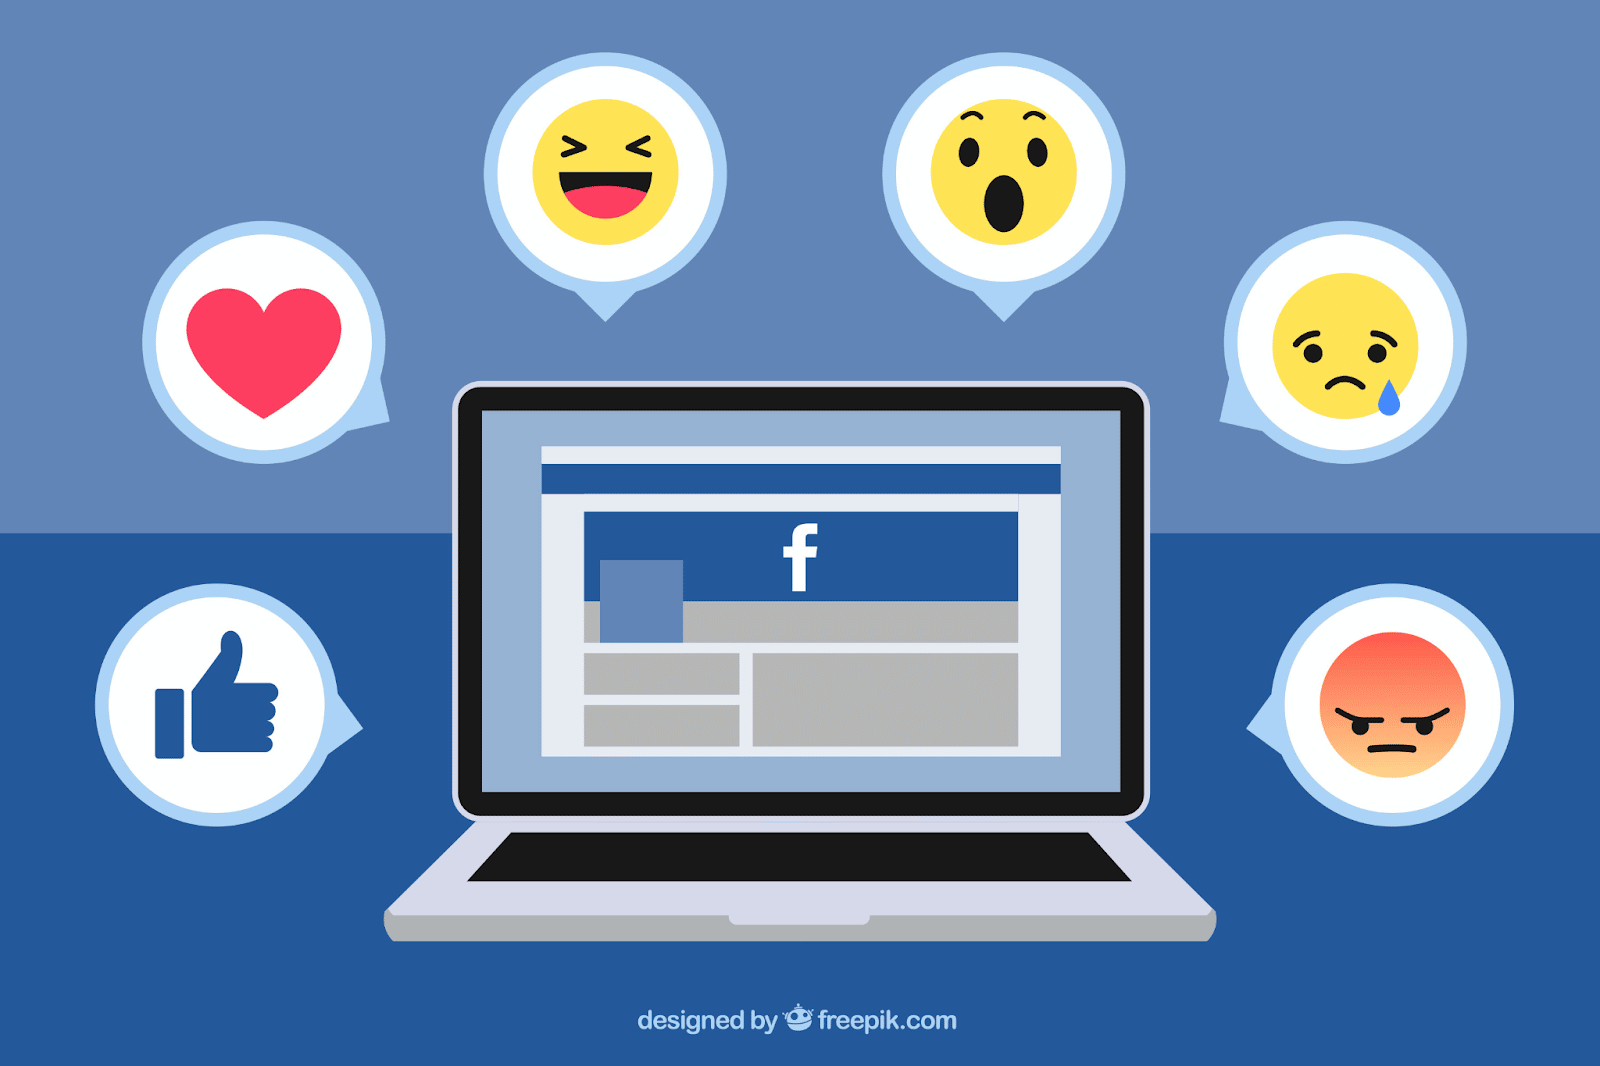 Khi tạo trang cá nhân, công ty bạn có khả năng đến gần hơn hơn 2 tỷ người trên Facebook. Nhưng trên “hệ sinh thái” này cũng có rất nhiều thương hiệu.